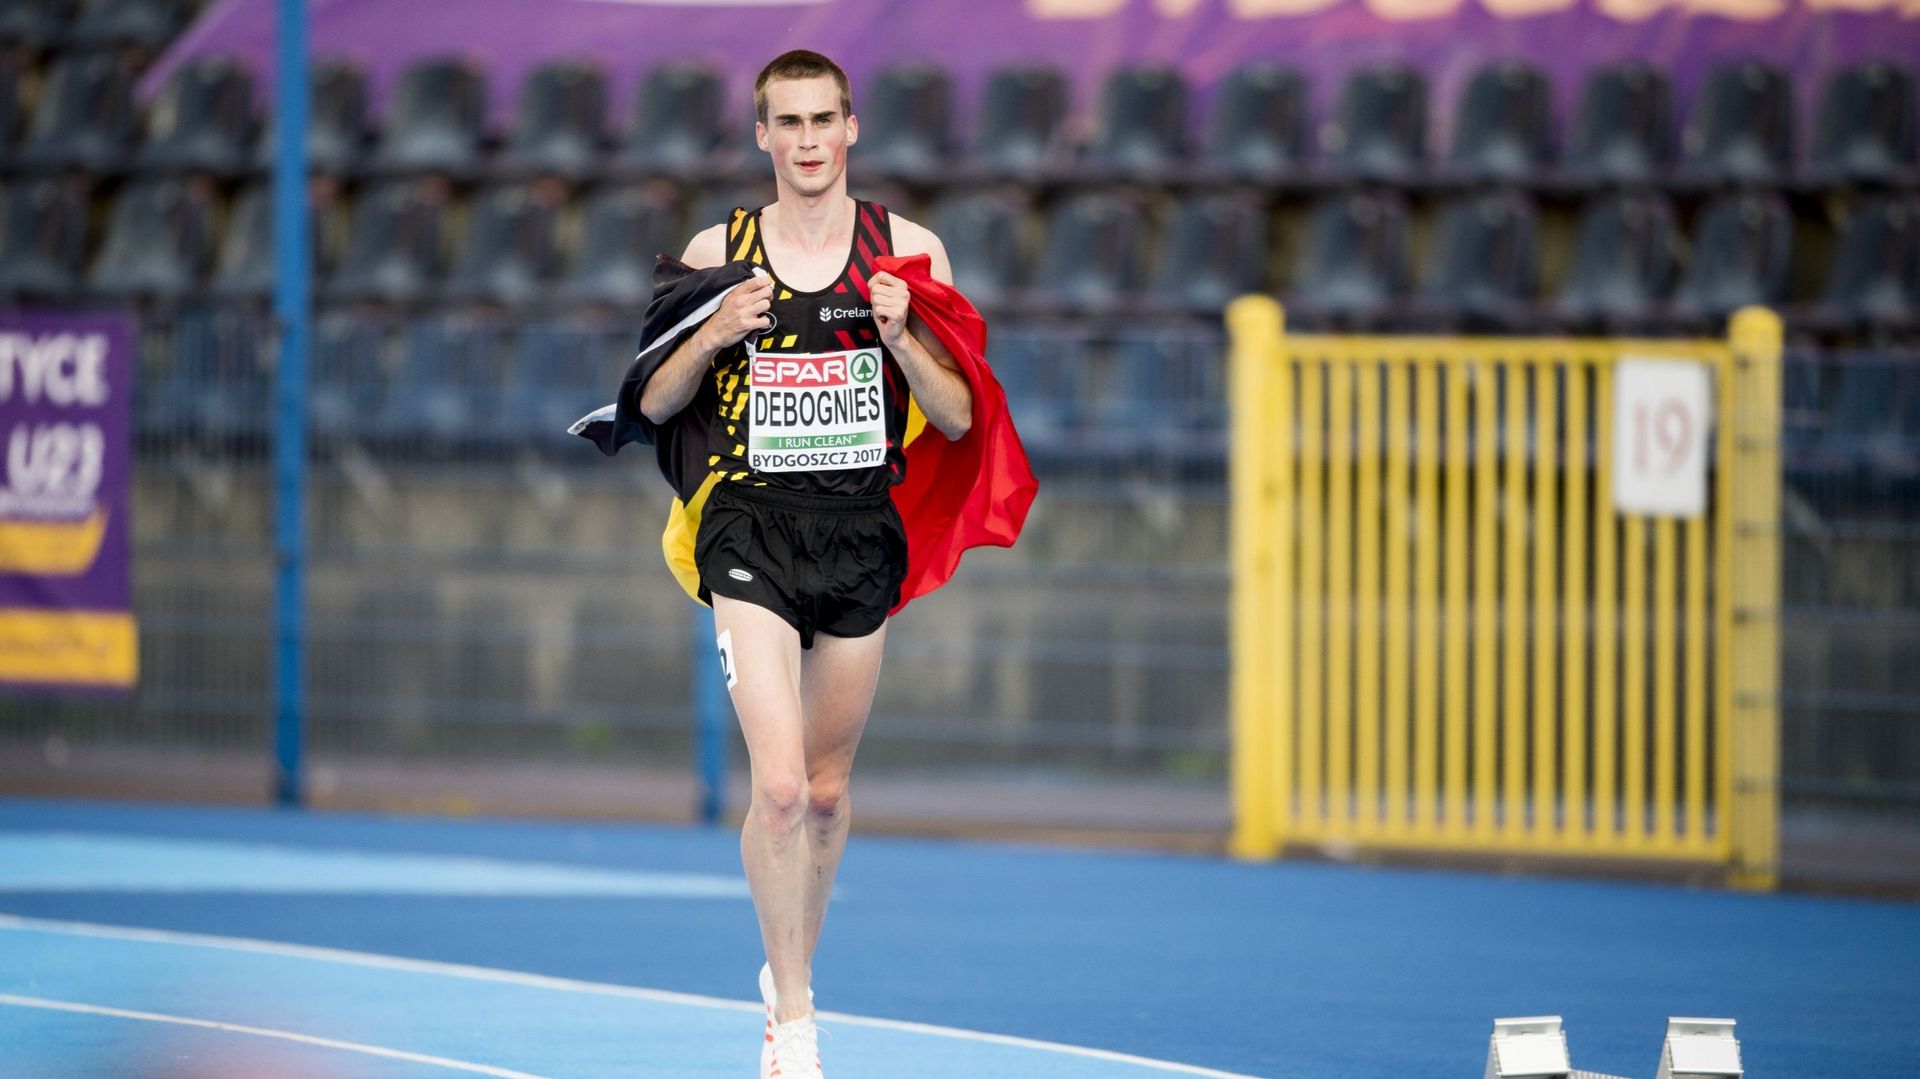 Simon Debognies décroche l'argent sur 5.000m à l'euro espoirs d'athlétisme